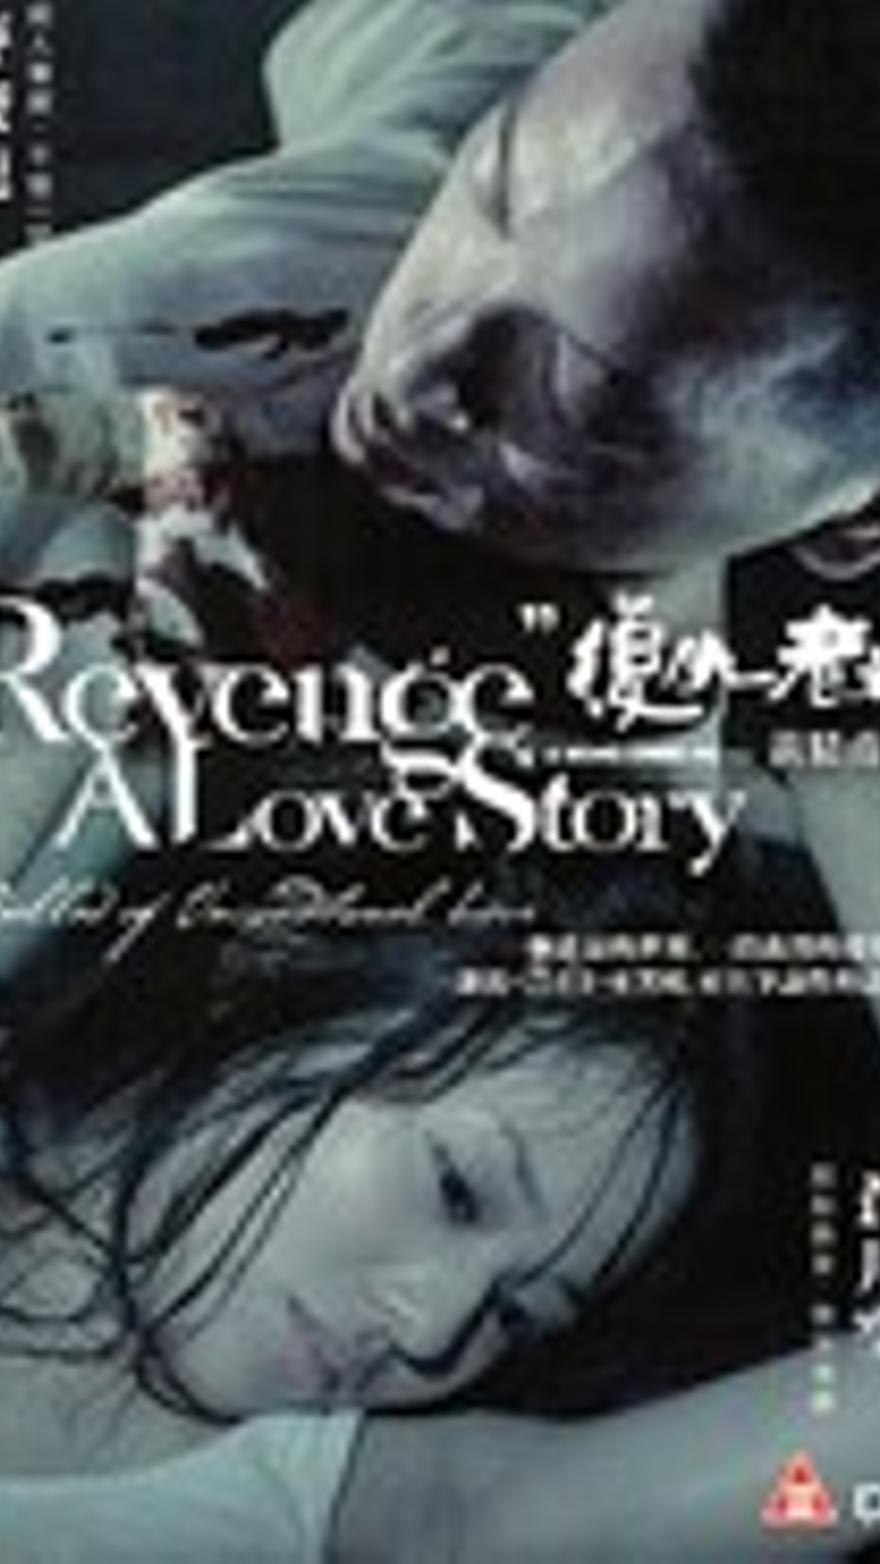 Revenge, a love story